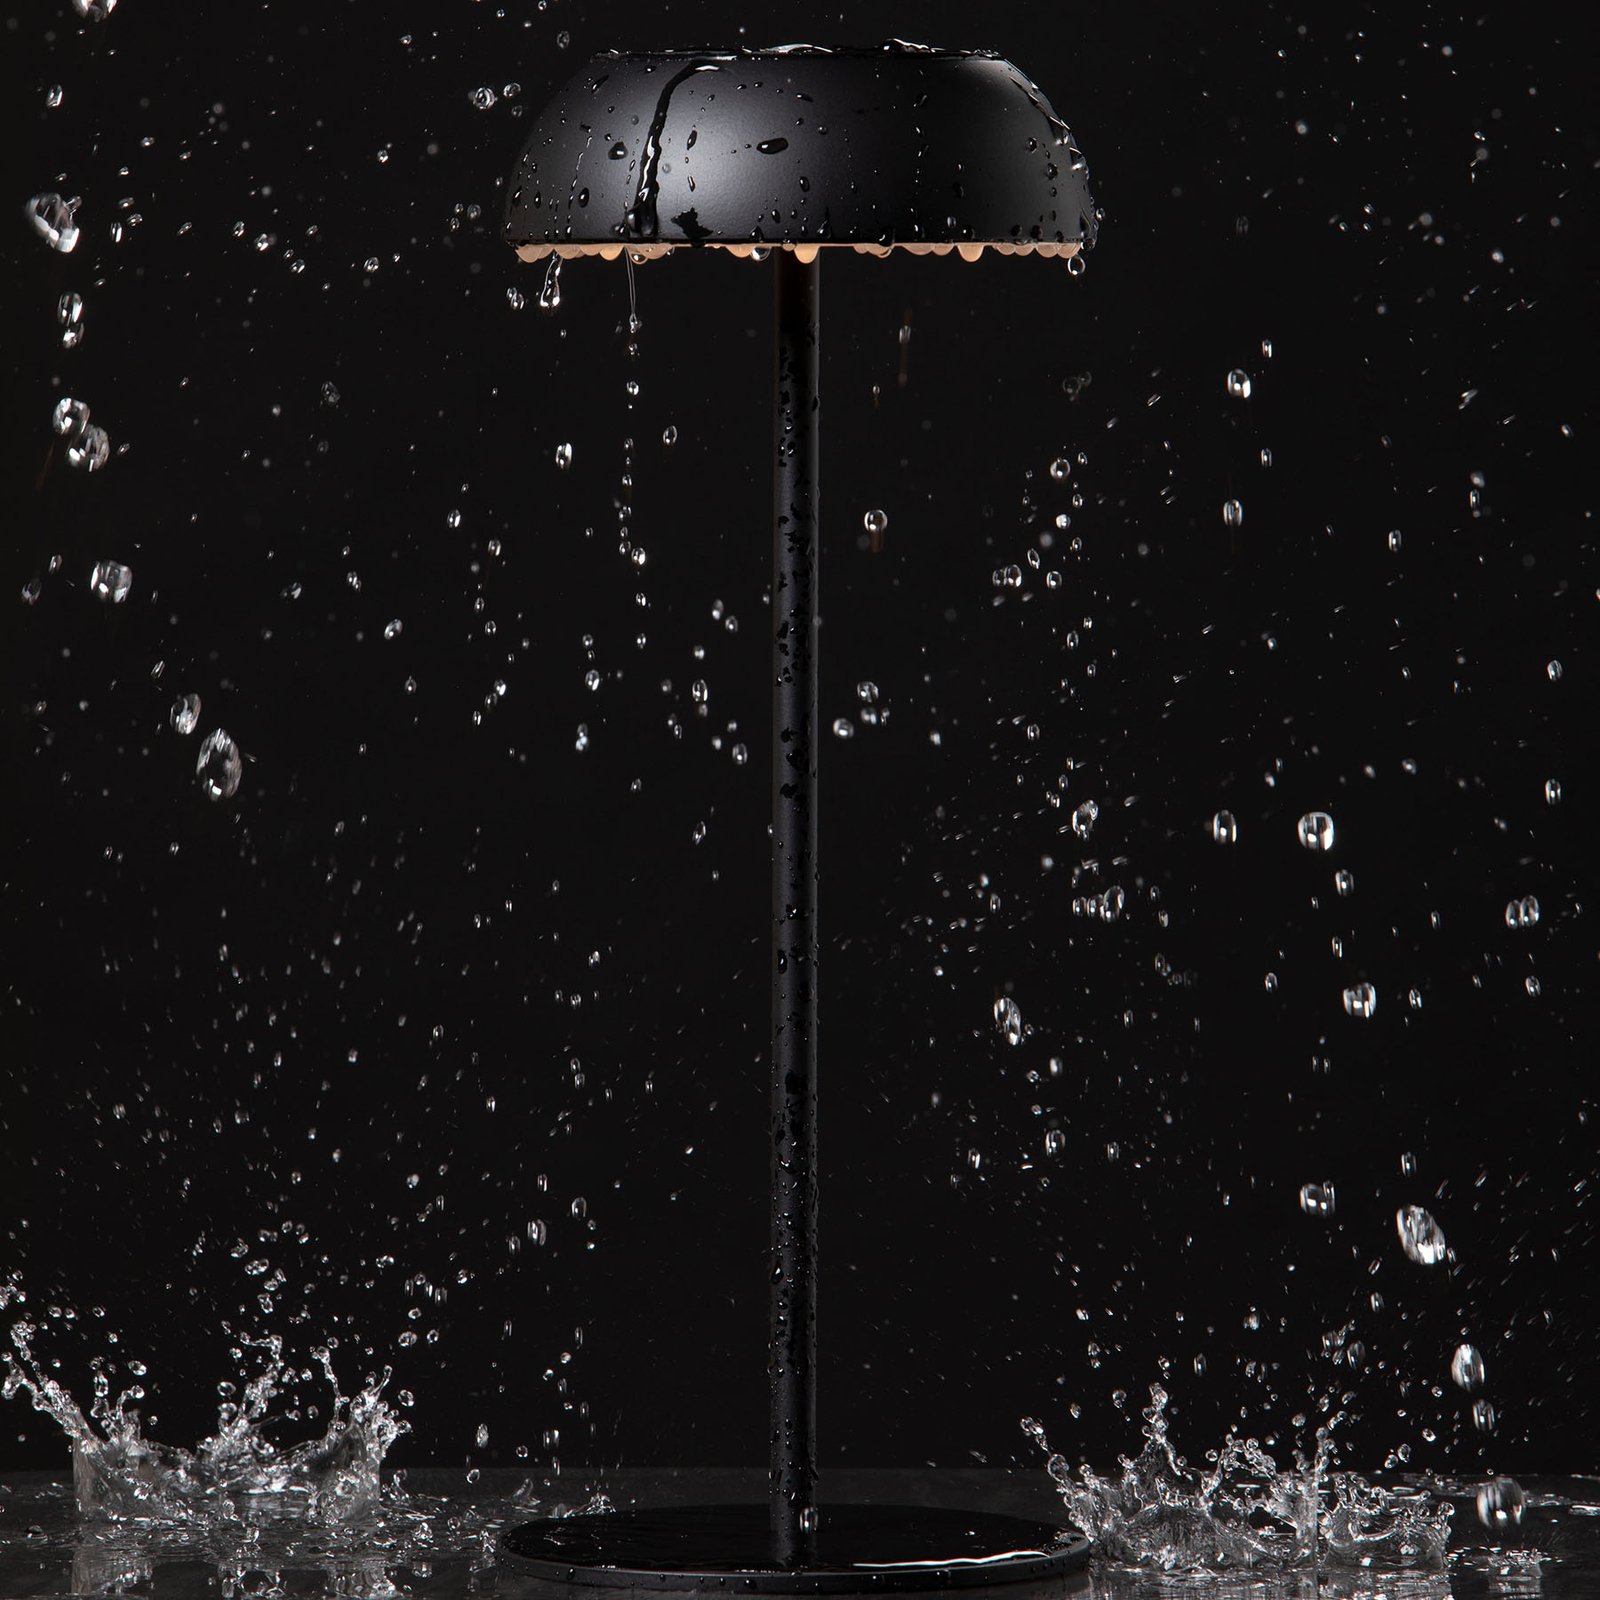 Axolight Float LED designer table lamp, black